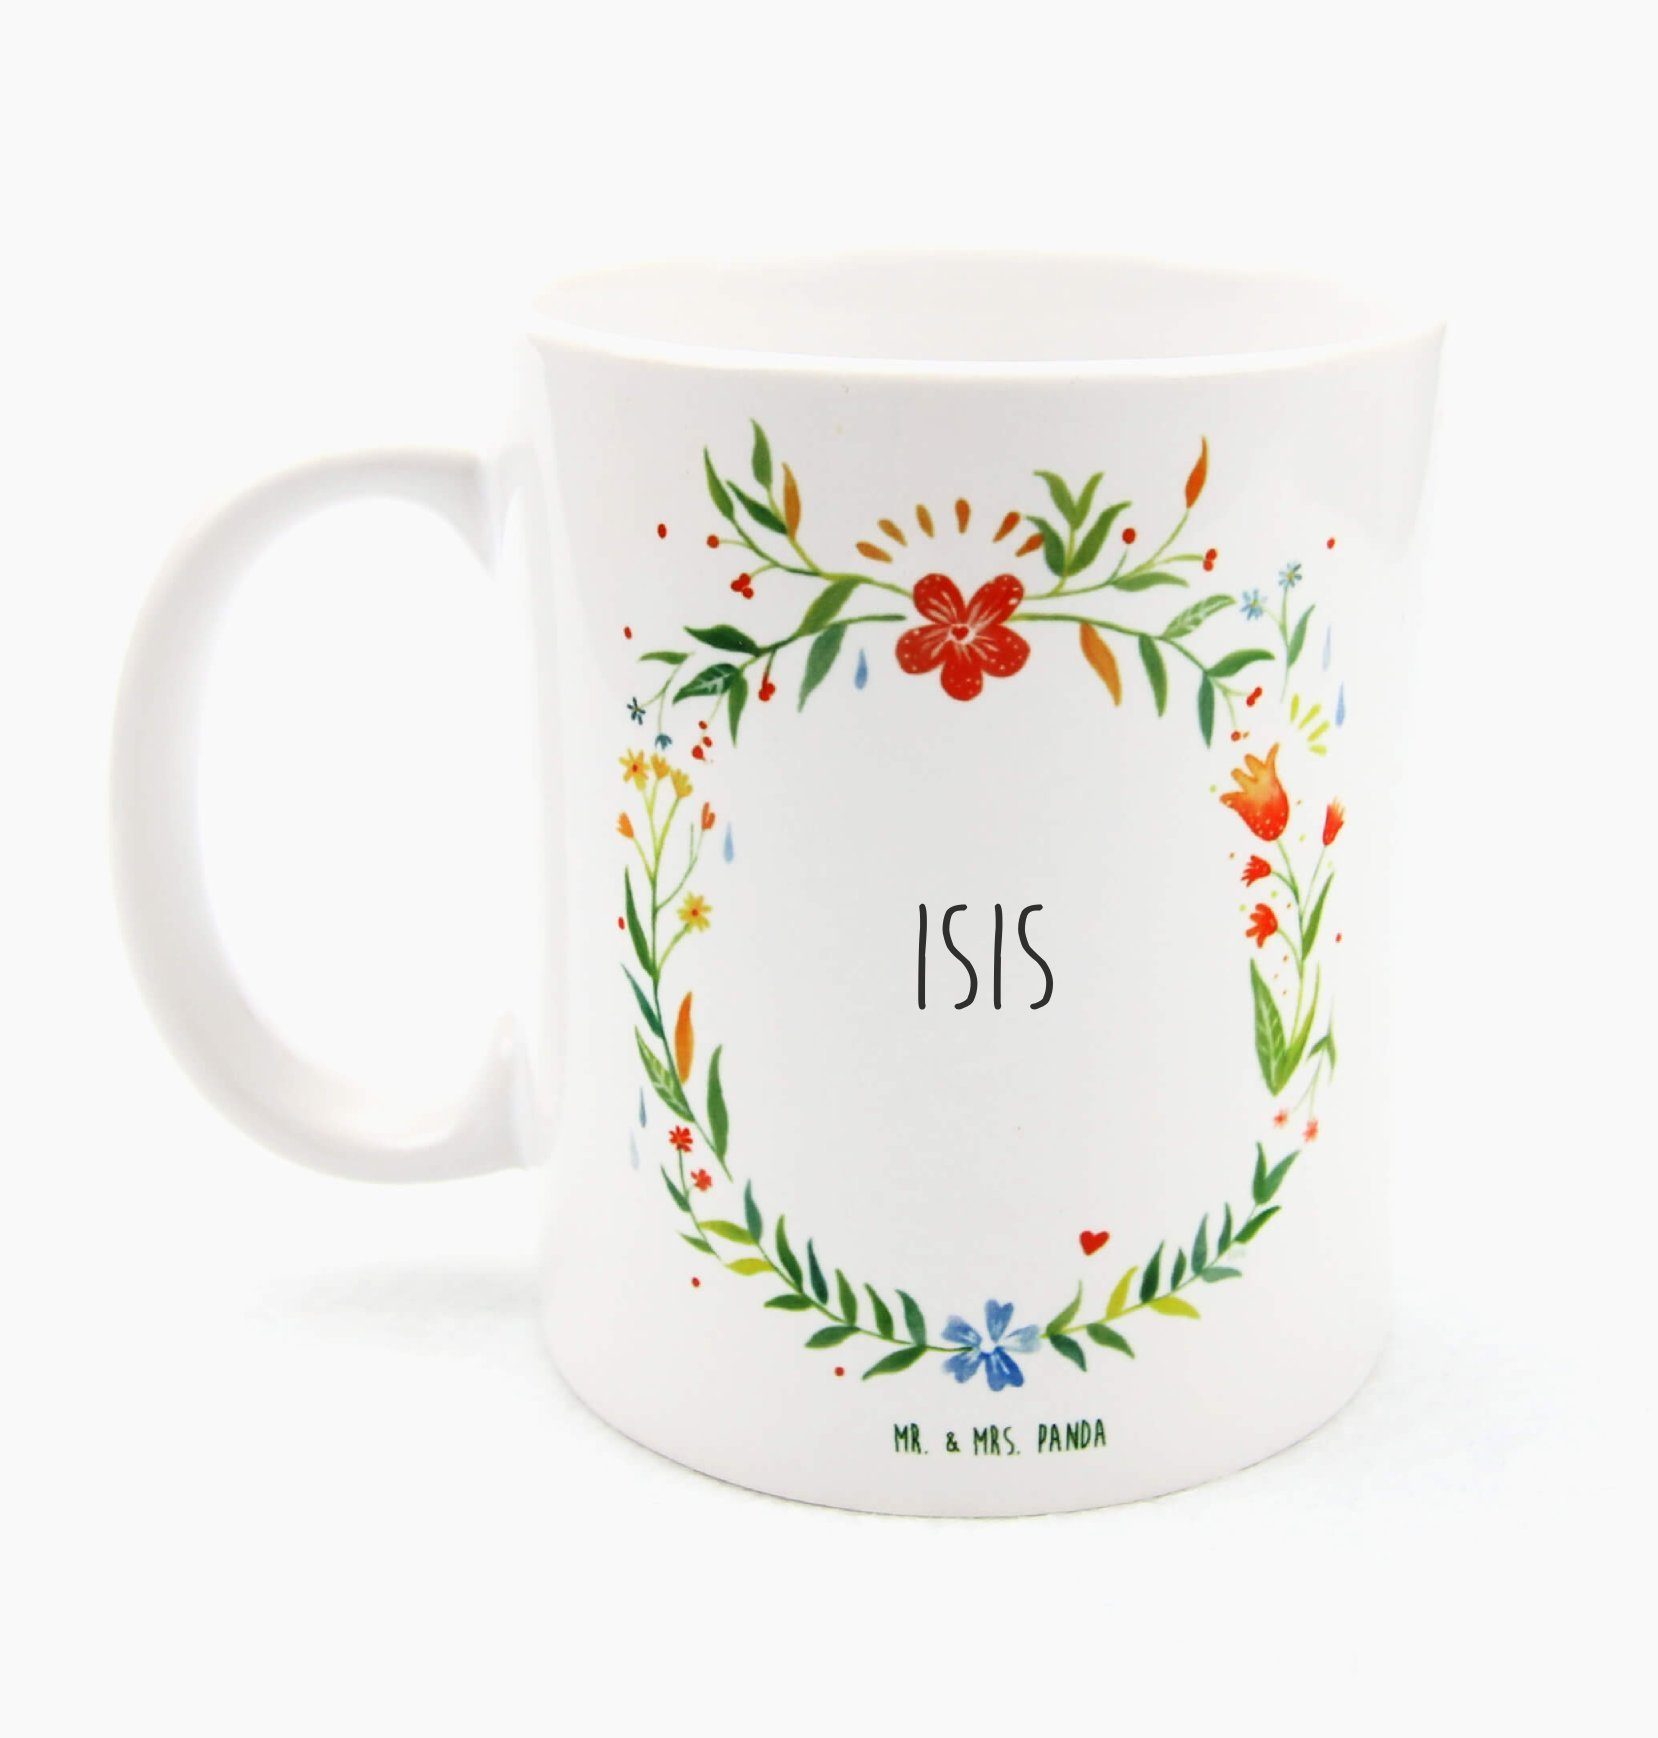 Mr. & Mrs. Tasse Isis Tasse Tasse Panda Keramik - Sprüche, Porzellan, Geschenk, Kaffeebecher, Motive